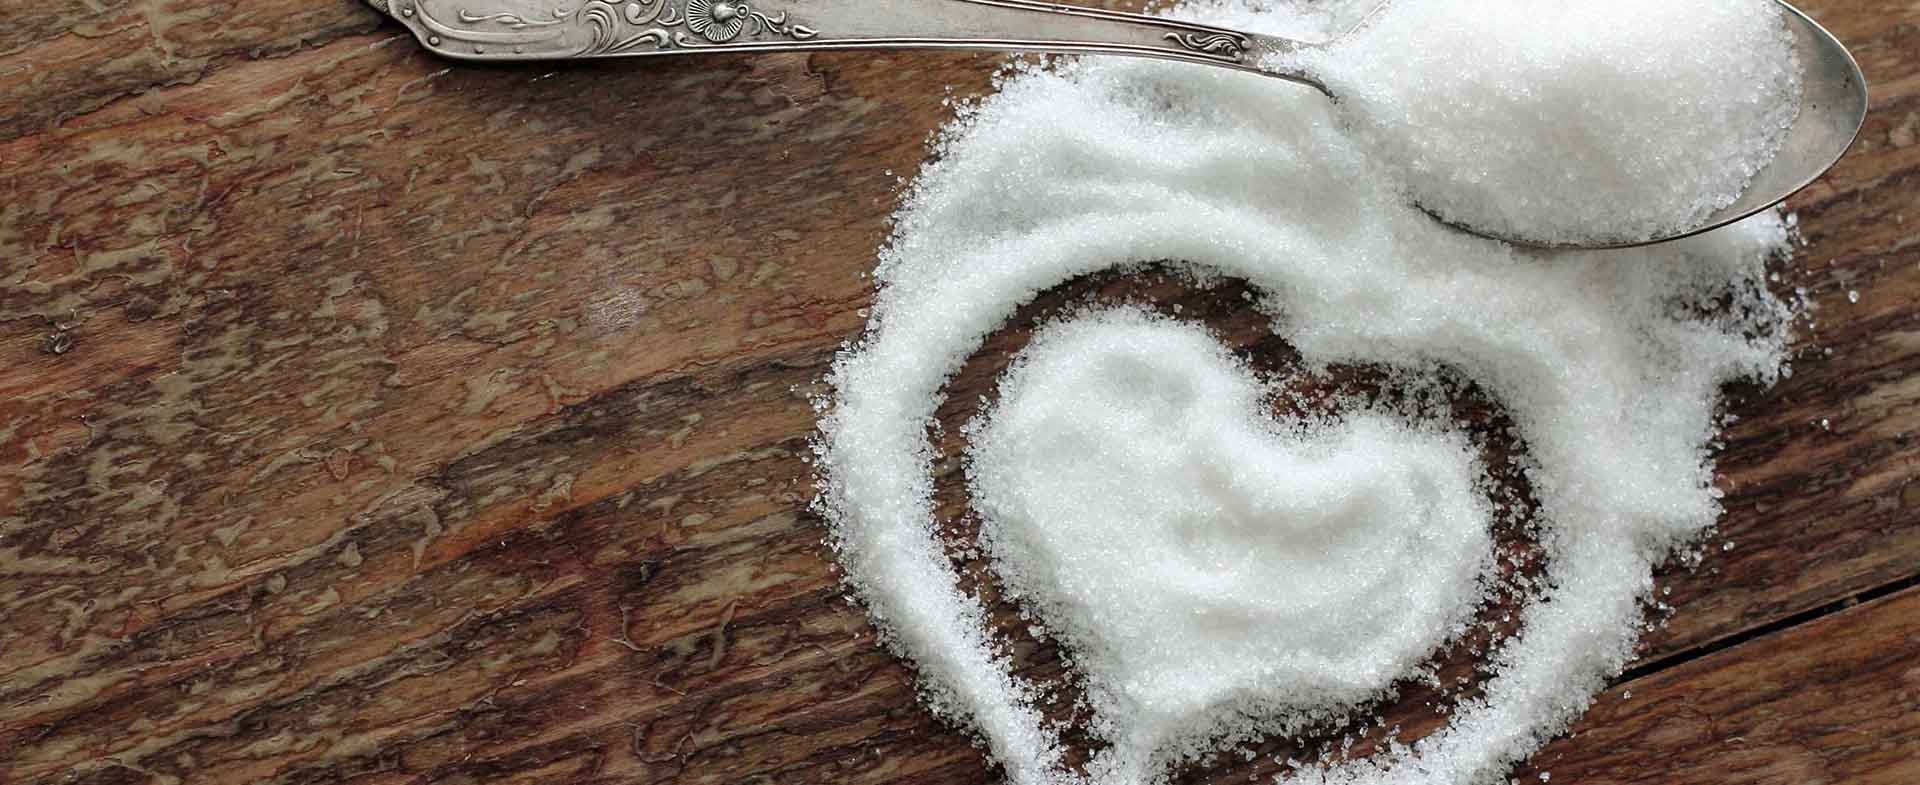 sugar making heart shape